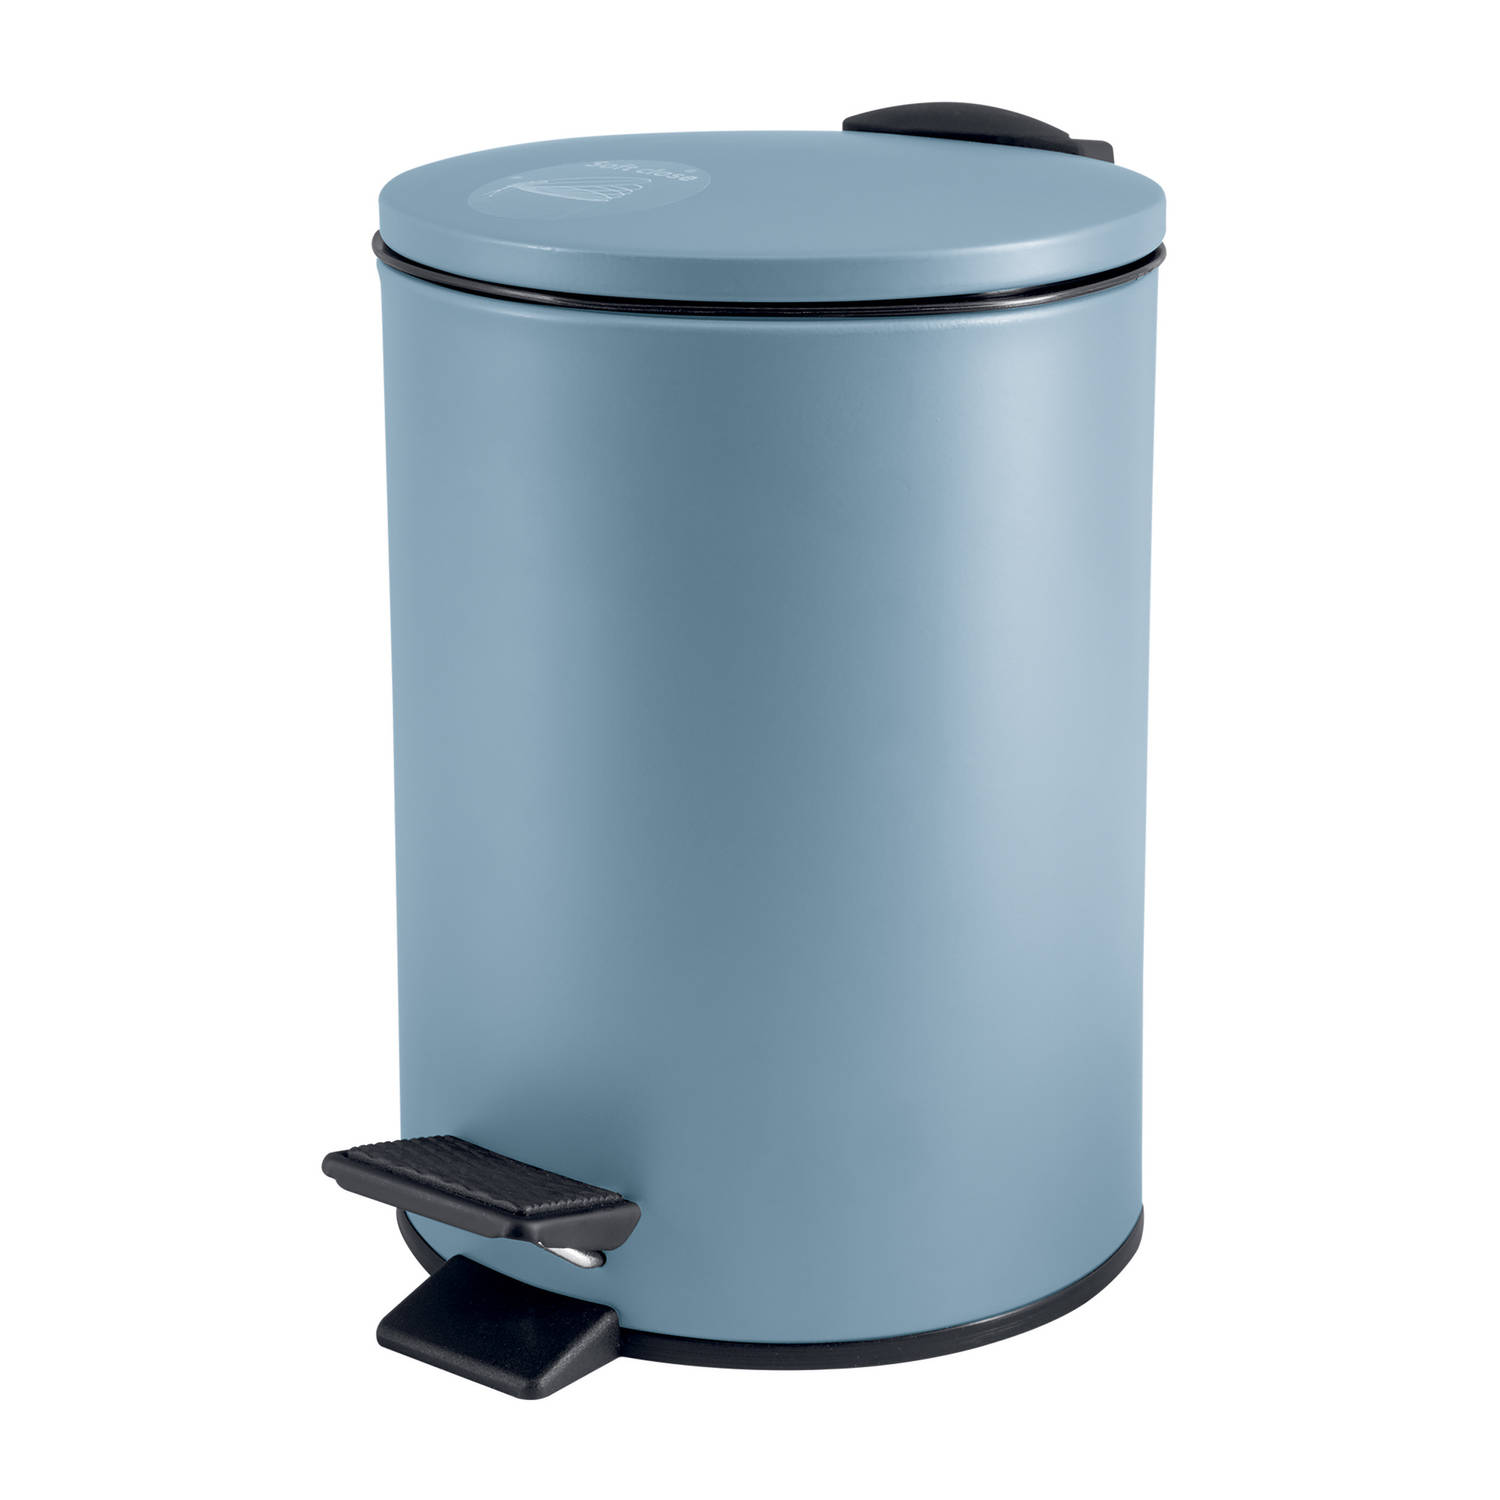 Spirella Pedaalemmer Cannes - lichtblauw - 3 liter - metaal - L17 x H25 cm - soft-close - toilet/badkamer